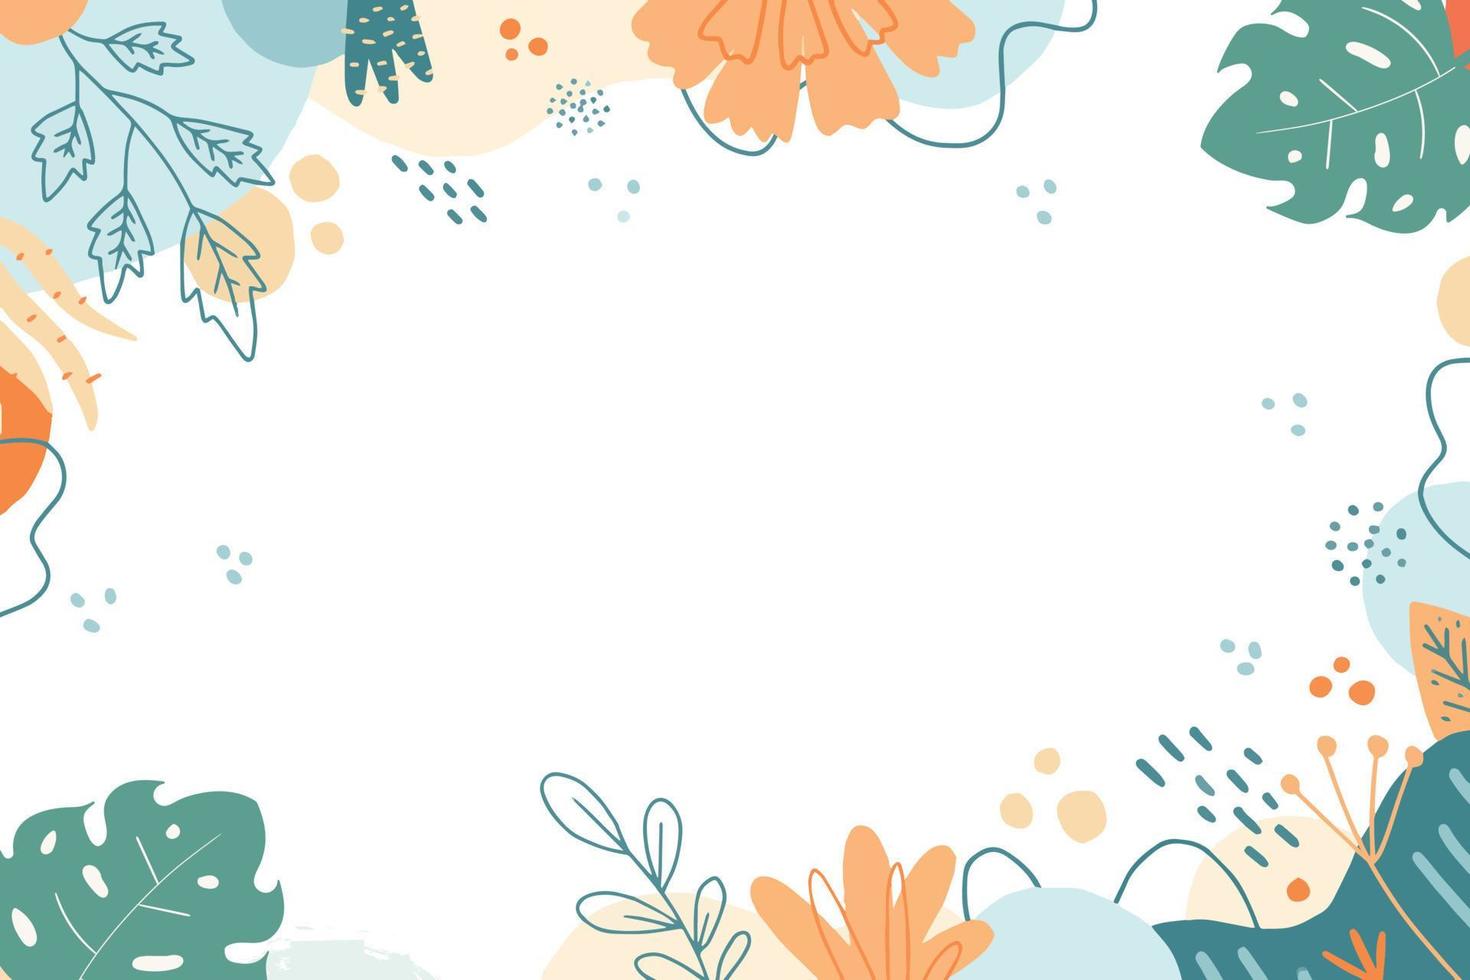 Vektor Illustration von einfach und schön Blumen- Hintergrund mit Kopieren Raum Bereich. geeignet zum Banner, Präsentation, Poster, Hintergrund, usw